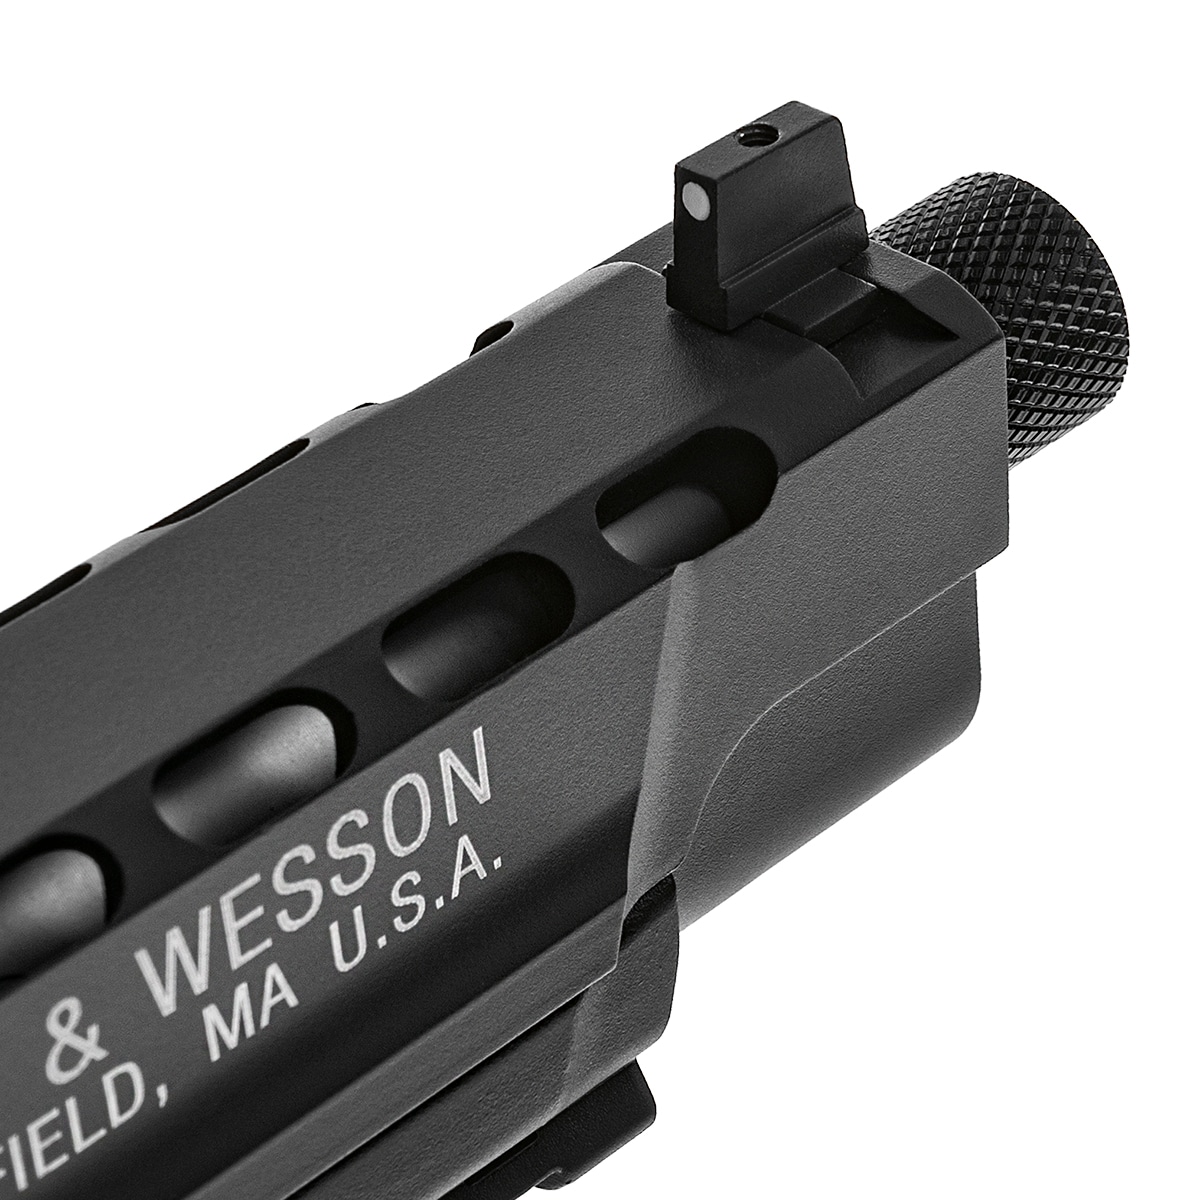 Wiatrówka Smith & Wesson M&P9L Performance Center Ported 4.5 mm